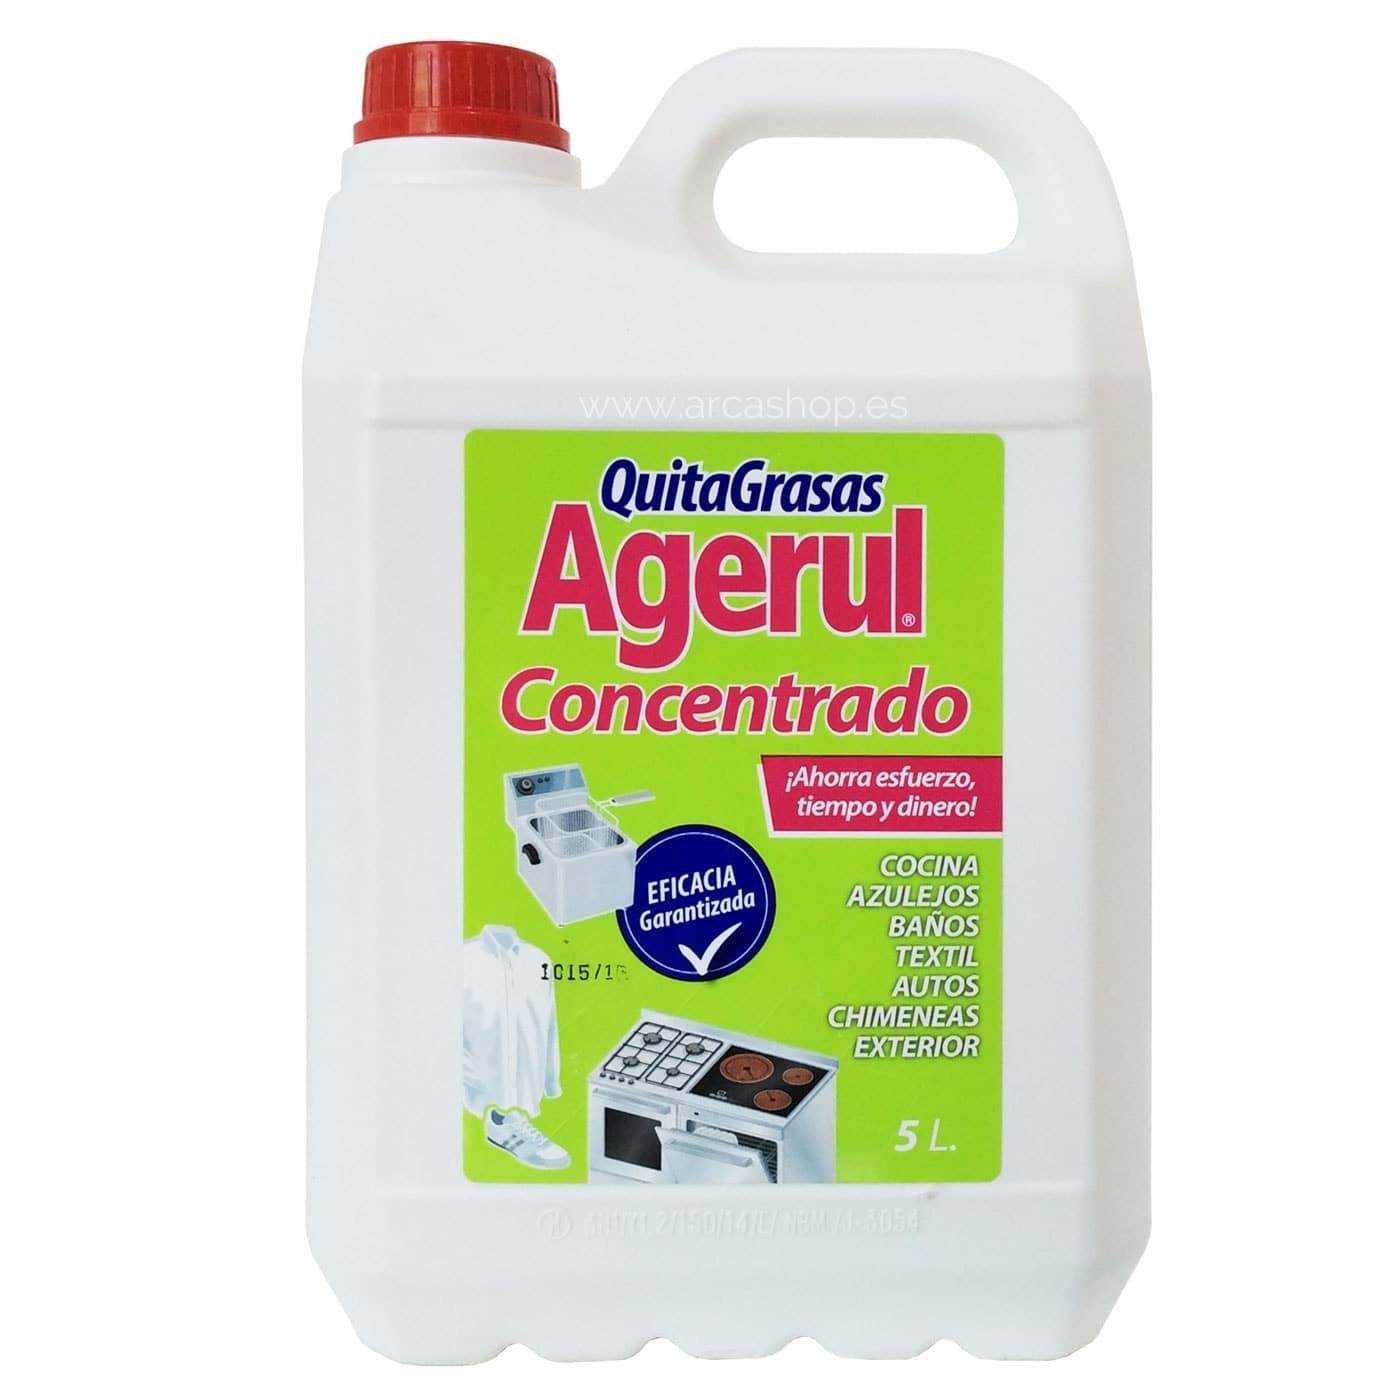 Quitagrasas Agerul Concentrado 5 litros